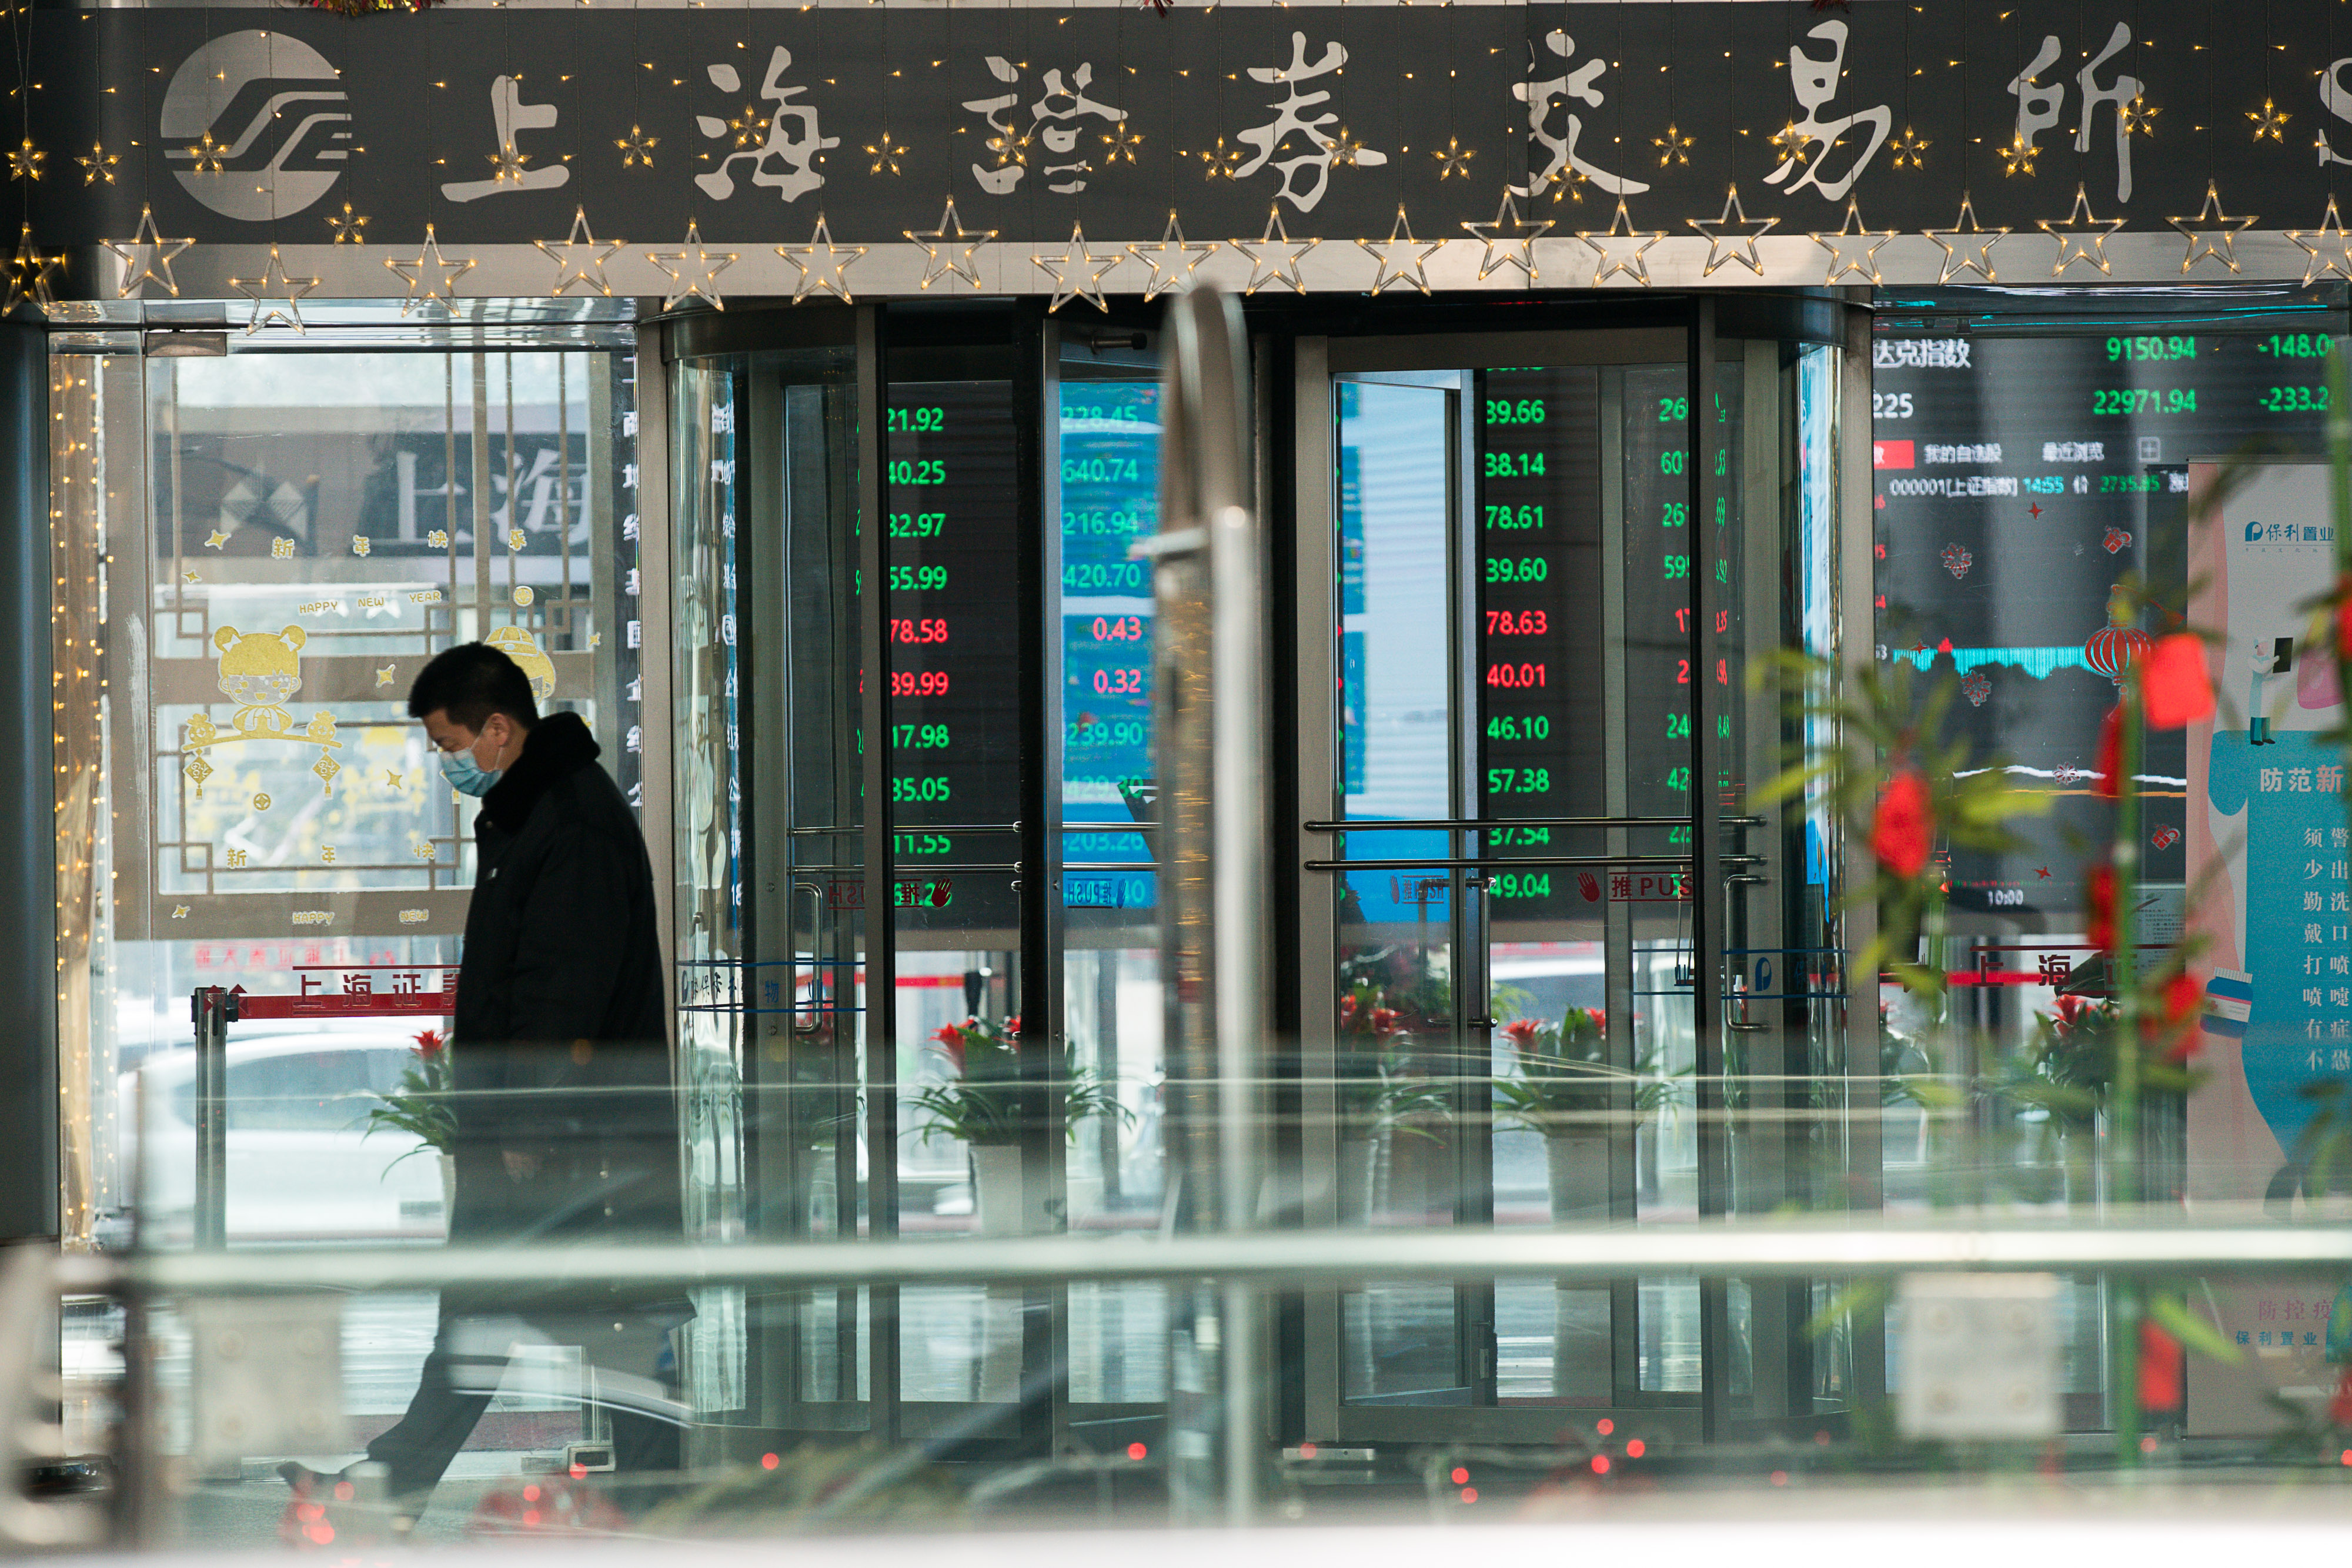 Tòa nhà Sở Giao dịch Chứng khoán Thượng Hải vào ngày 03 tháng 02 năm 2020 tại Thượng Hải, Trung Quốc. (Ảnh Yifan Ding / Getty Images)